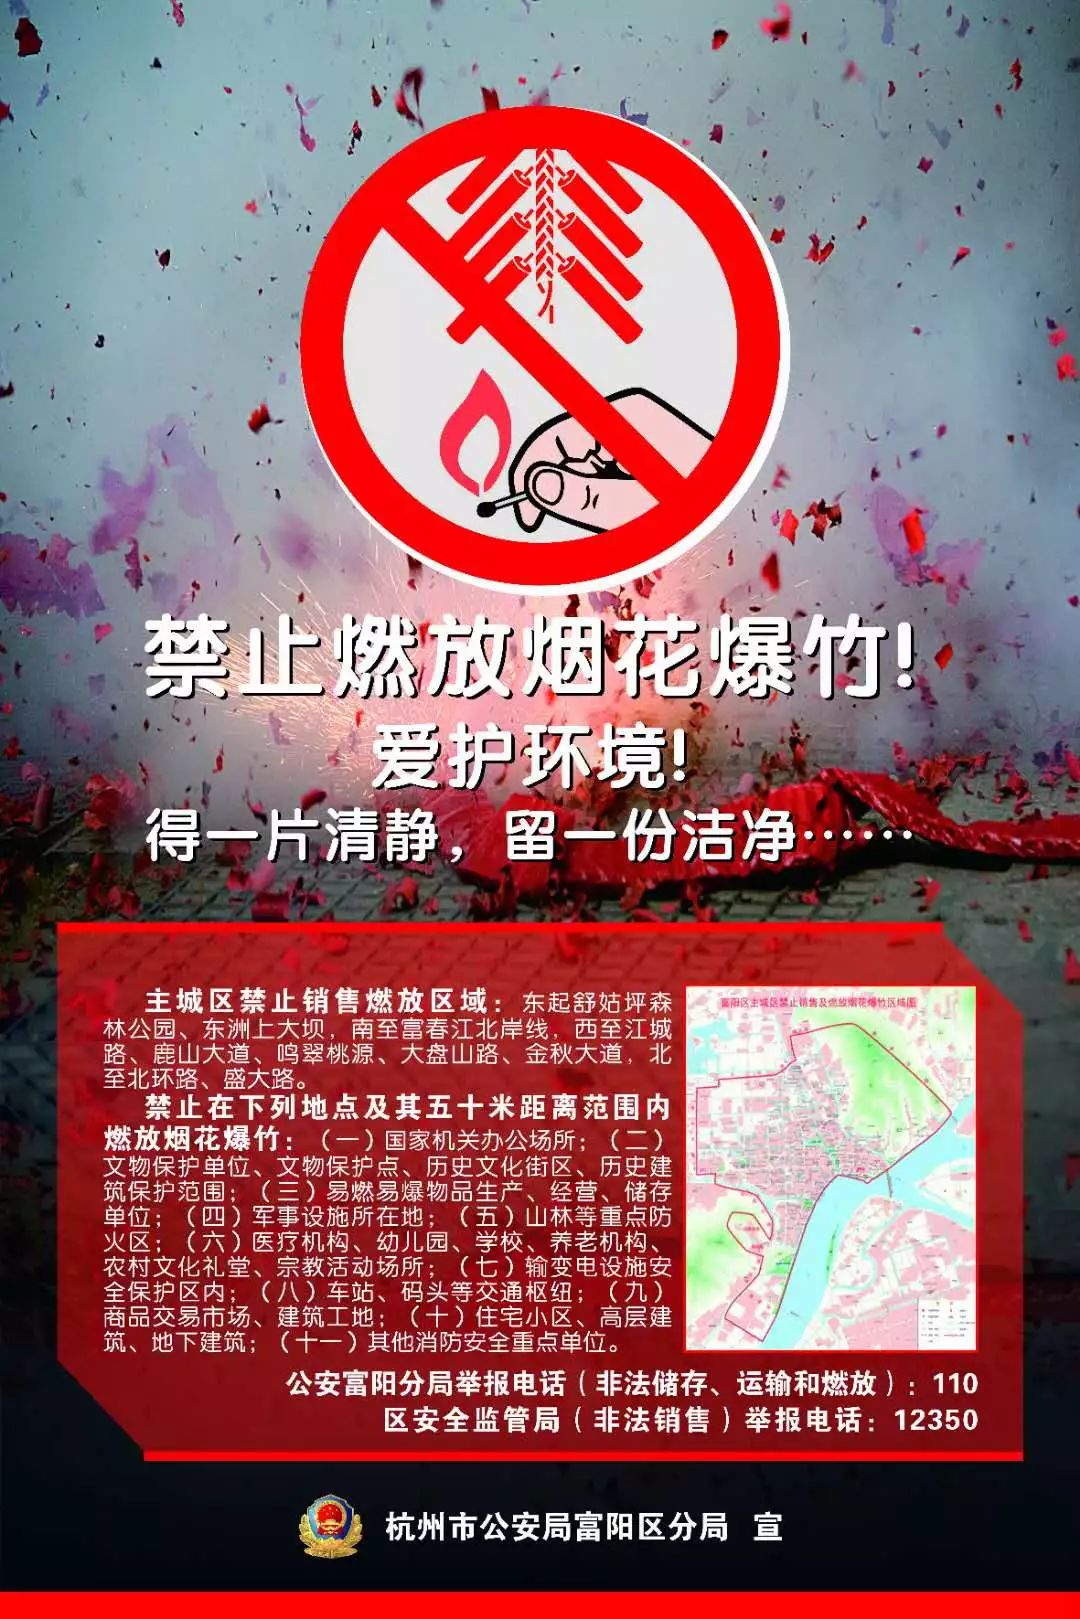 春节期间,富阳人注意啦主城区禁止燃放烟花爆竹!